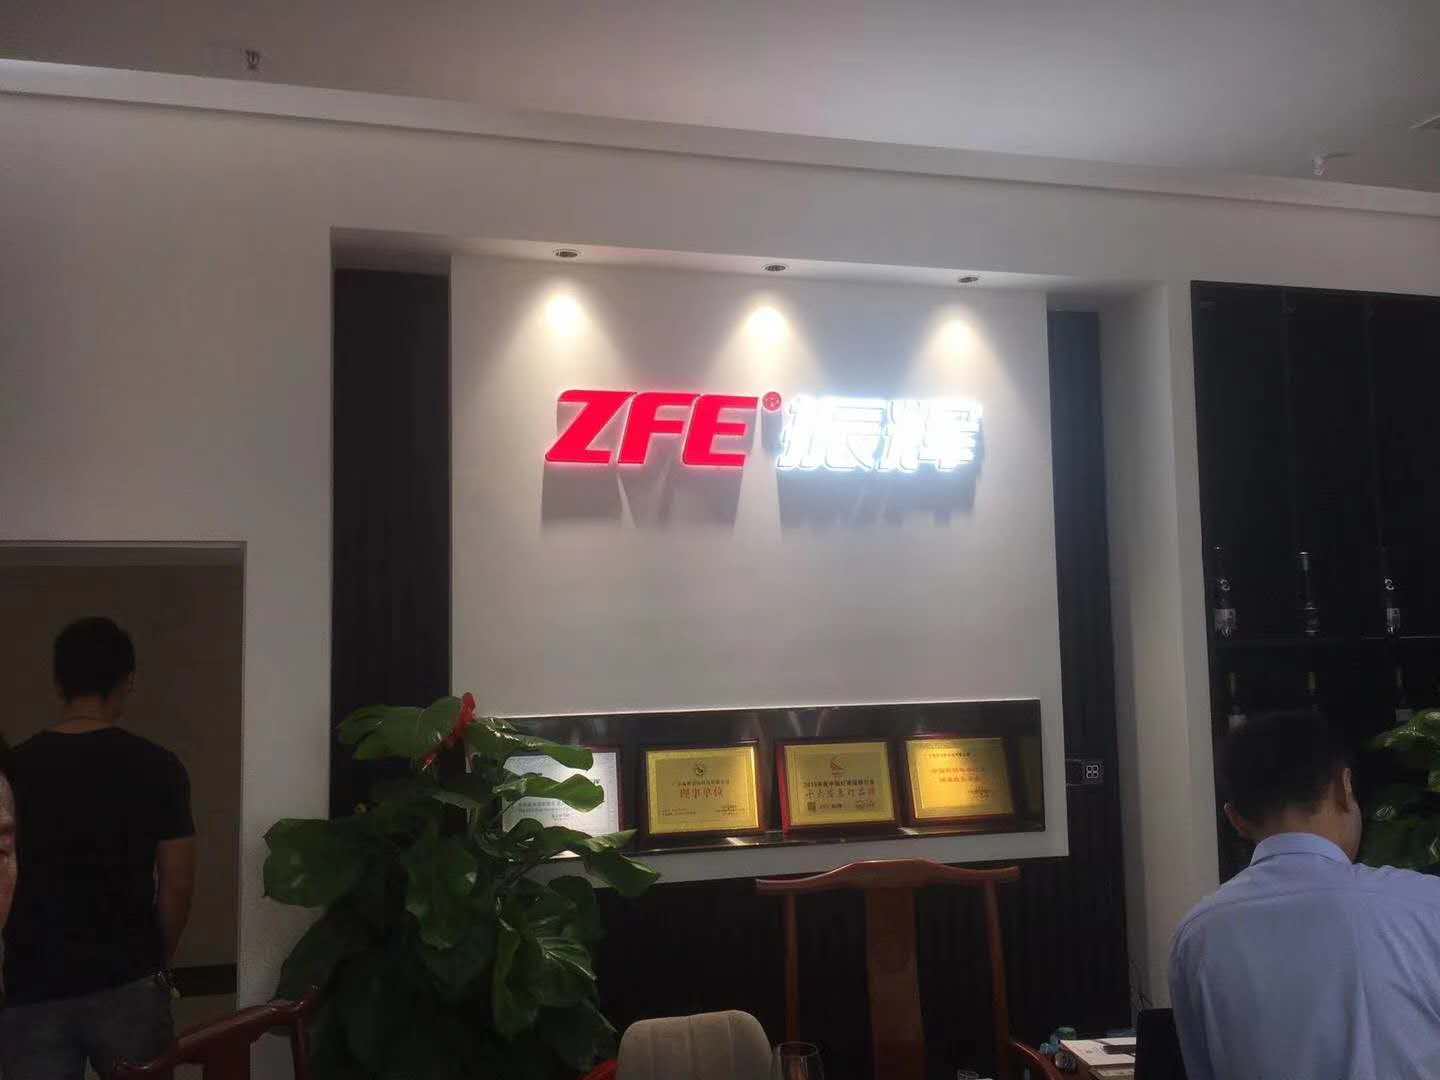 ZFE-Unternehmen - Guzhen-Geschäft am 9. Oktober, Probebetrieb, willkommen zu Geschäftsverhandlungen